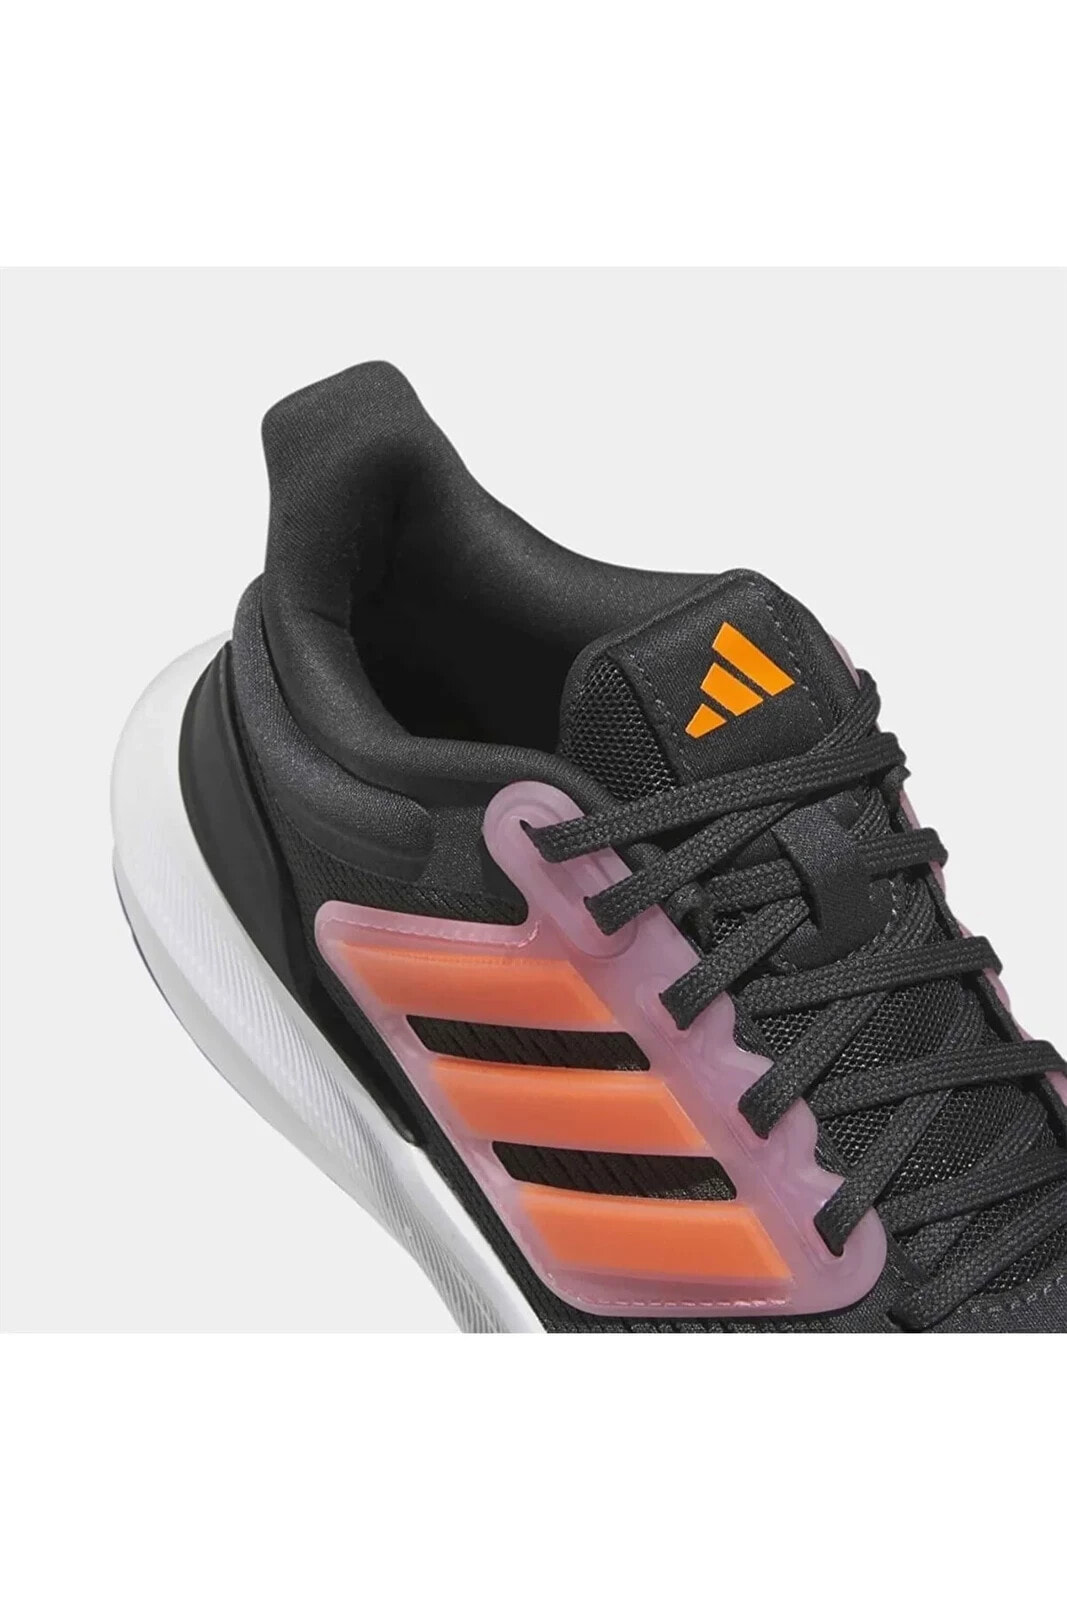 Adidas ultrabounce